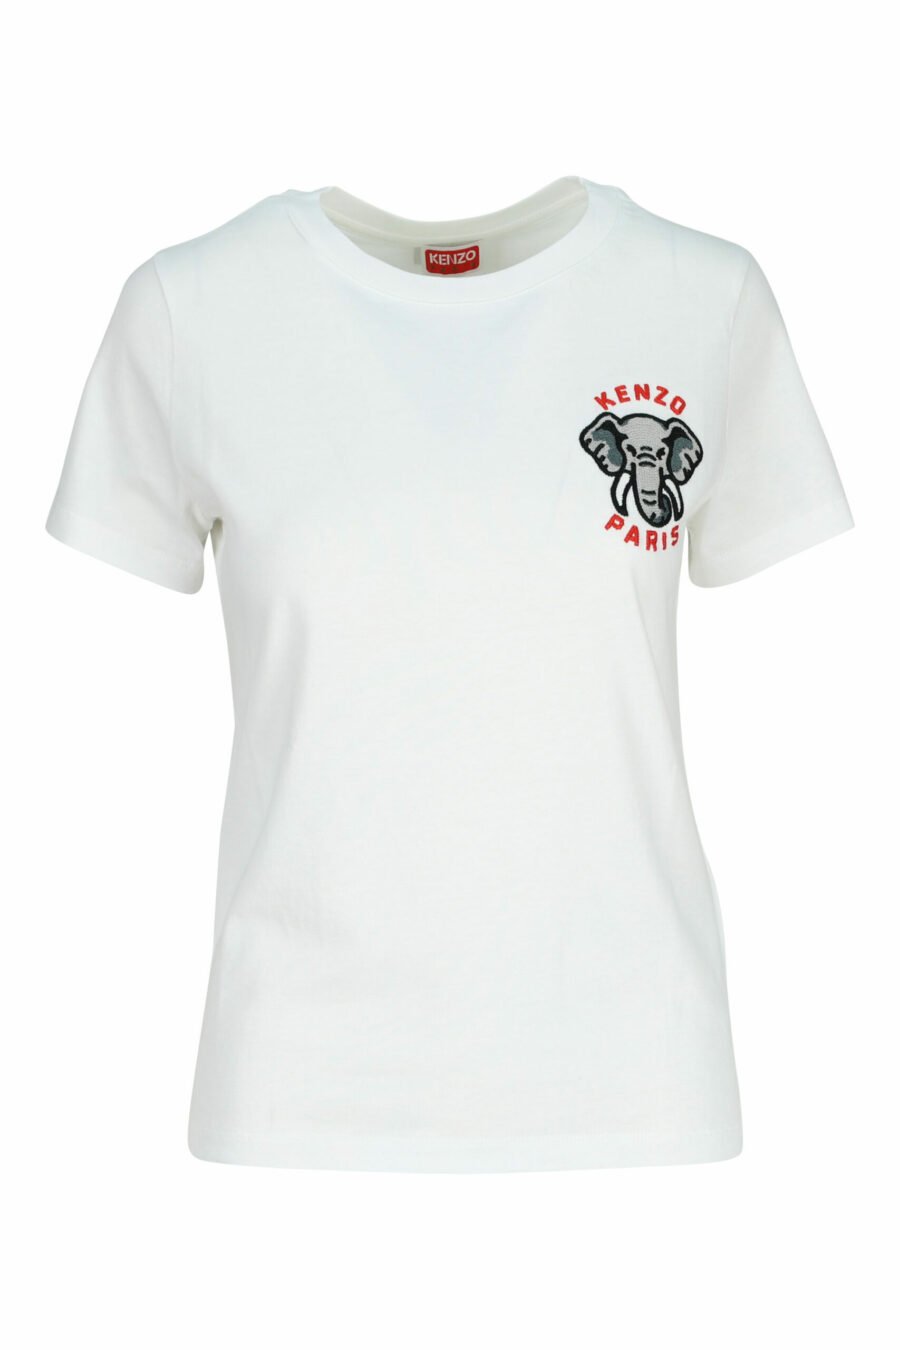 T-shirt blanc avec mini logo "kenzo elephant" - 3612230620117 scaled